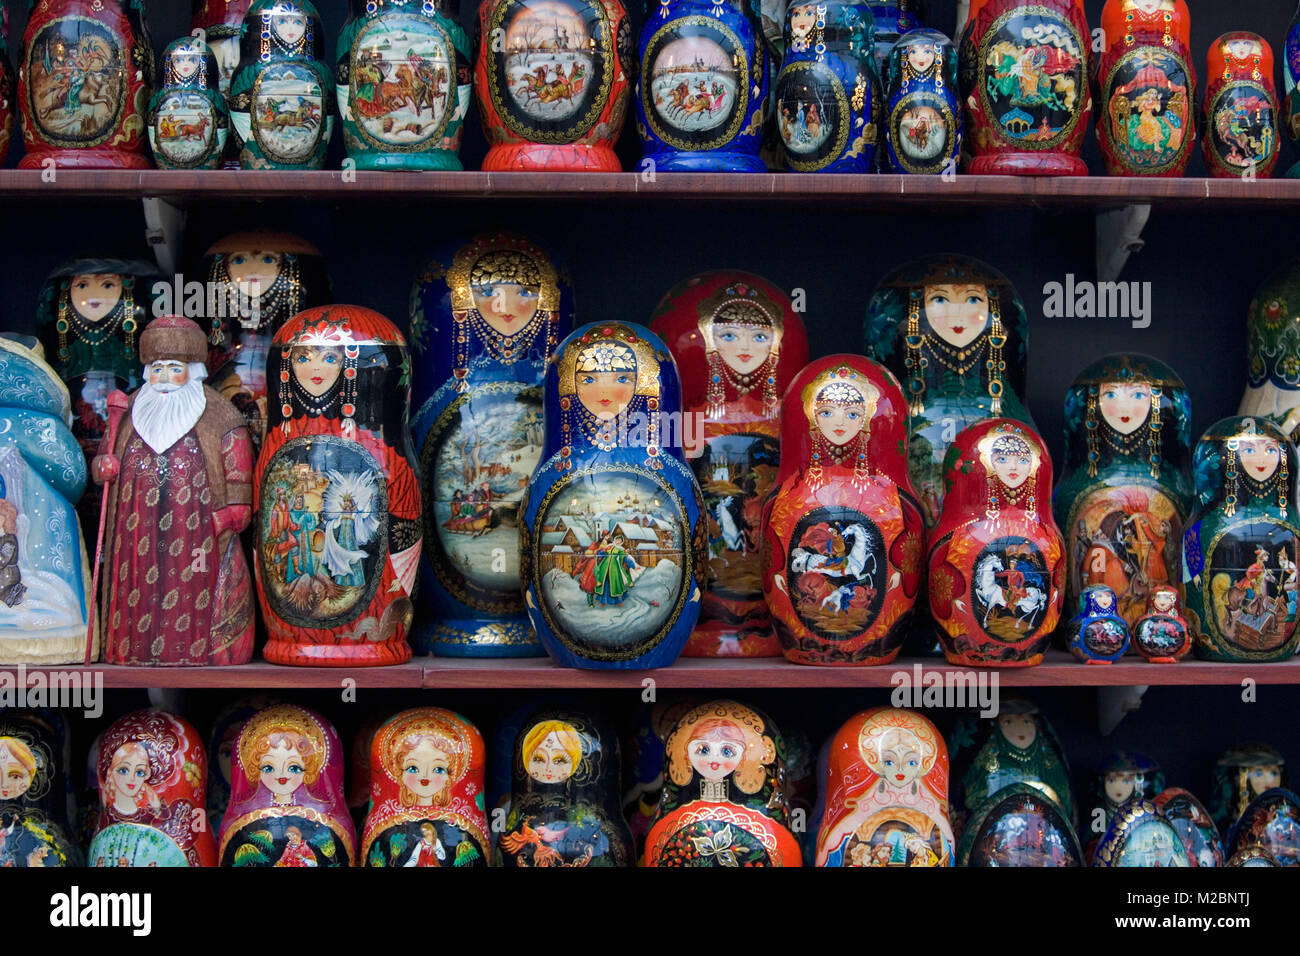 Russland. Sankt Petersburg. Babuschkas, matrjoschka zum Verkauf. Souvenir Russische Verschachtelung Puppen. Stockfoto